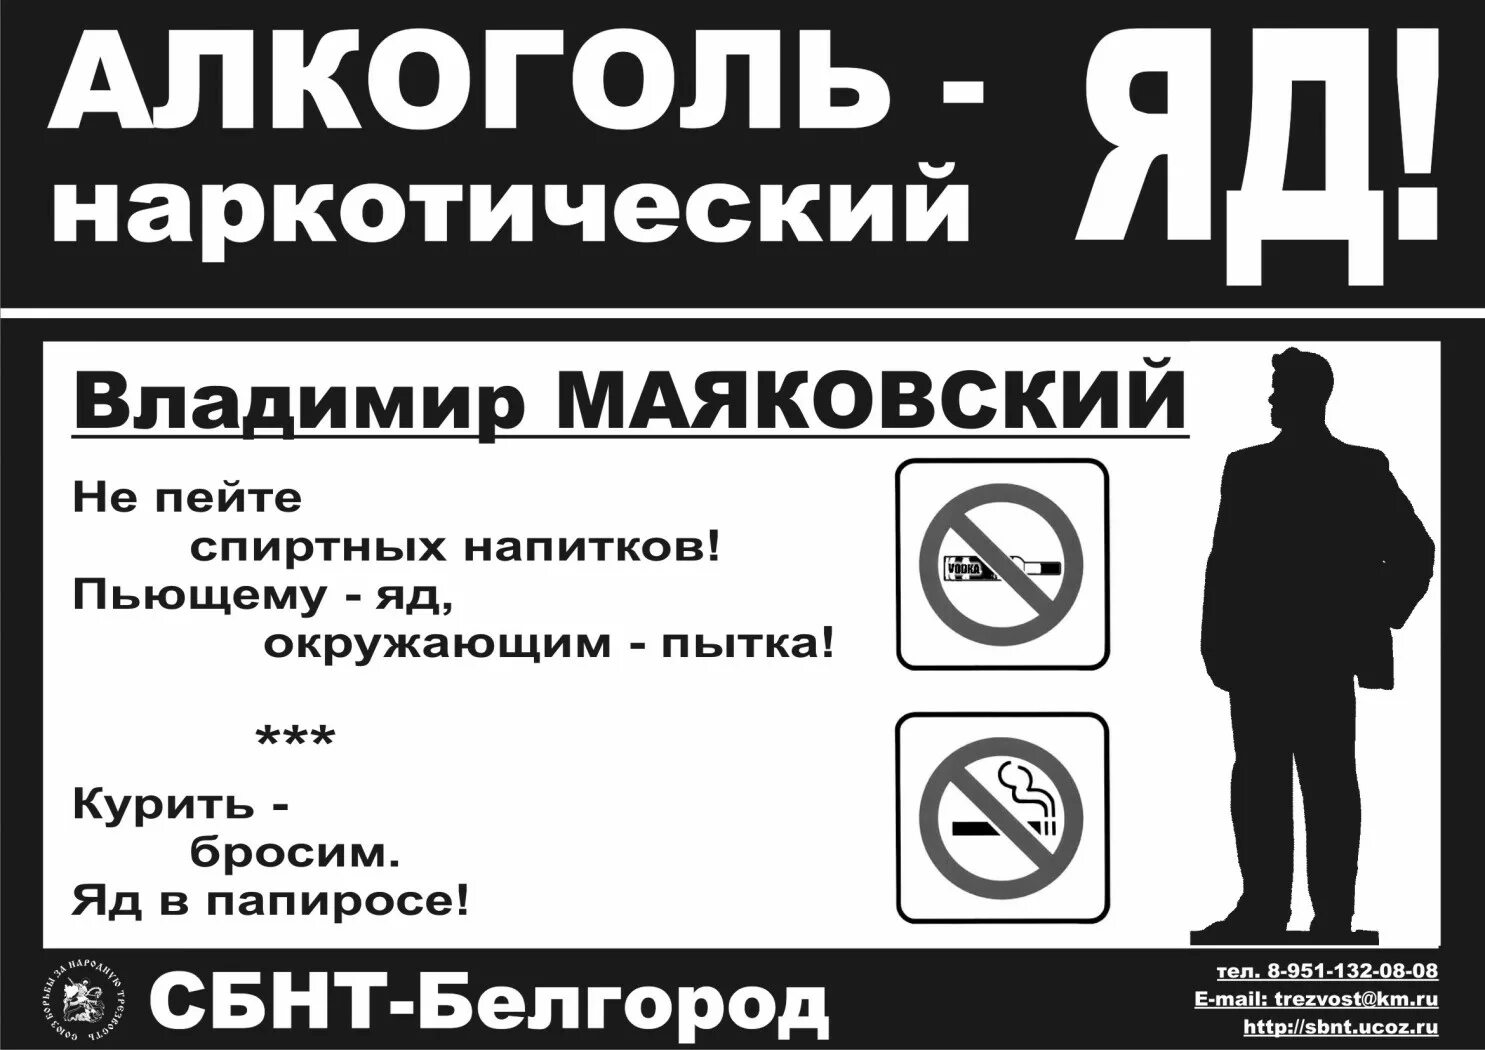 Курить не брошу. Лозунги против алкоголя. Плакаты о вреде алкоголизма. Листовки против алкоголя. Против алкоголя.